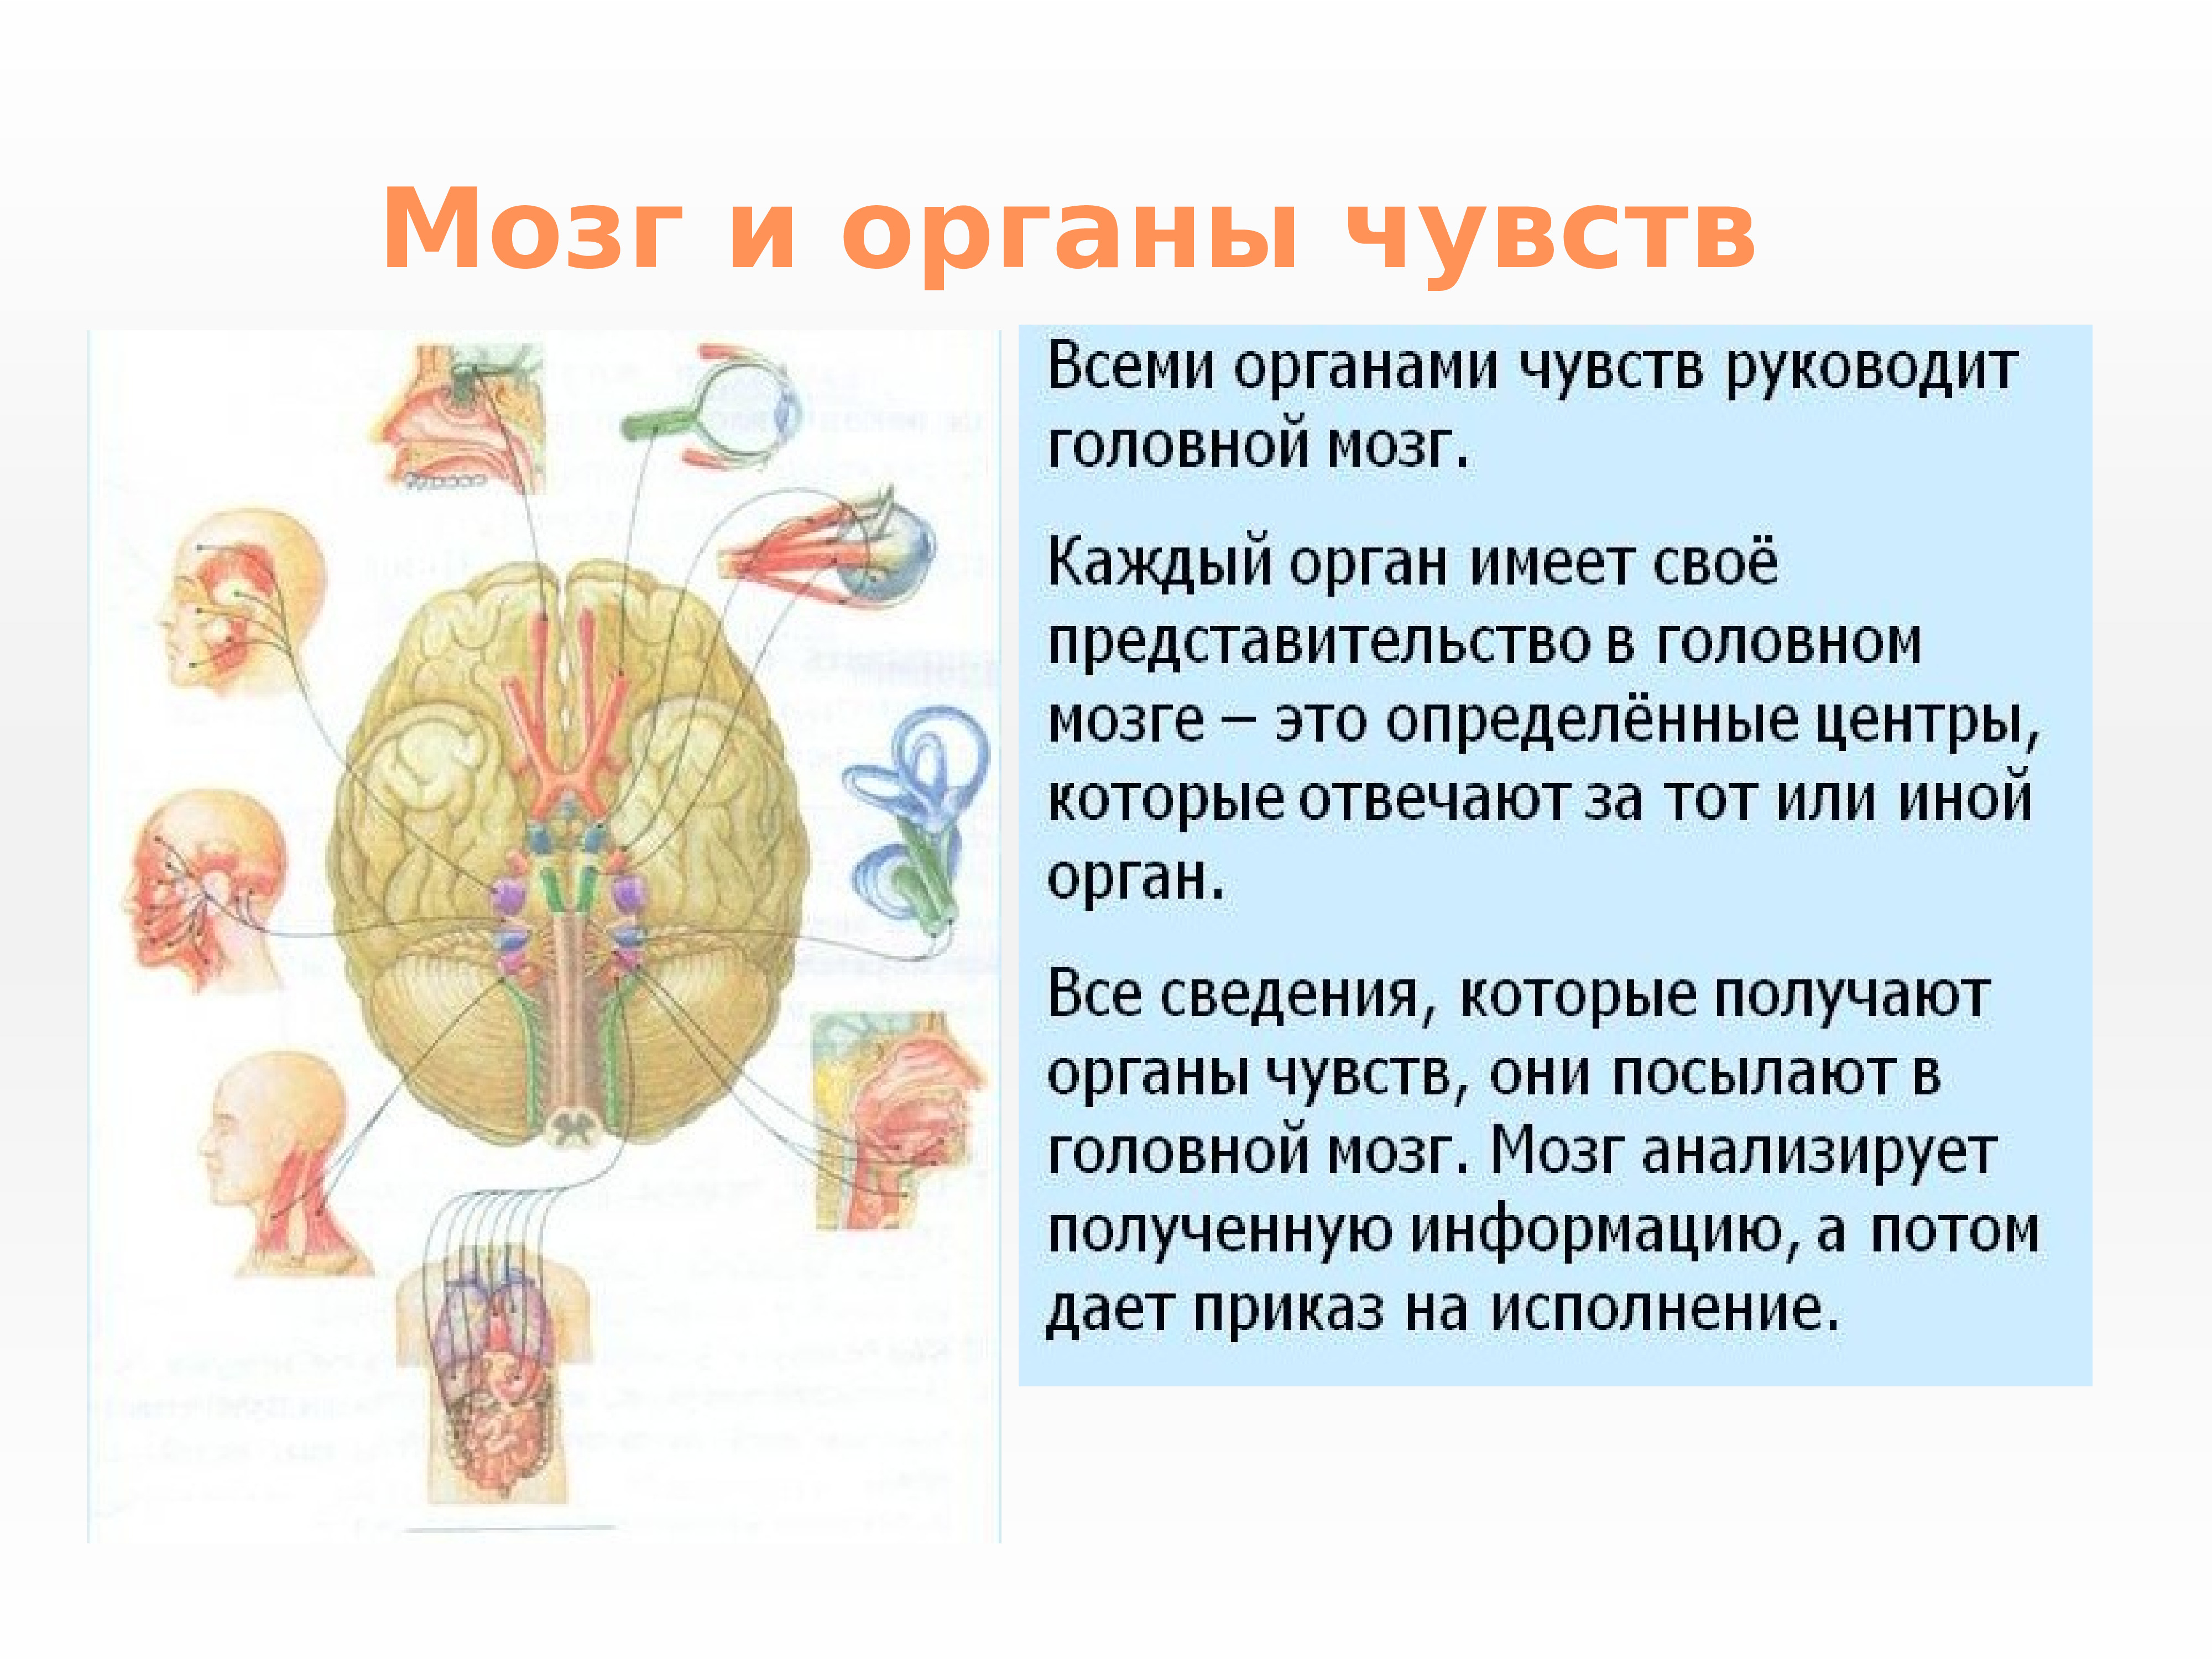 Органы чувств структура. Нервная система и органы чувств система человека. Нервная система структура организма. Нервная система строение и функции органов. Нервная система и органы чувств строение функция.